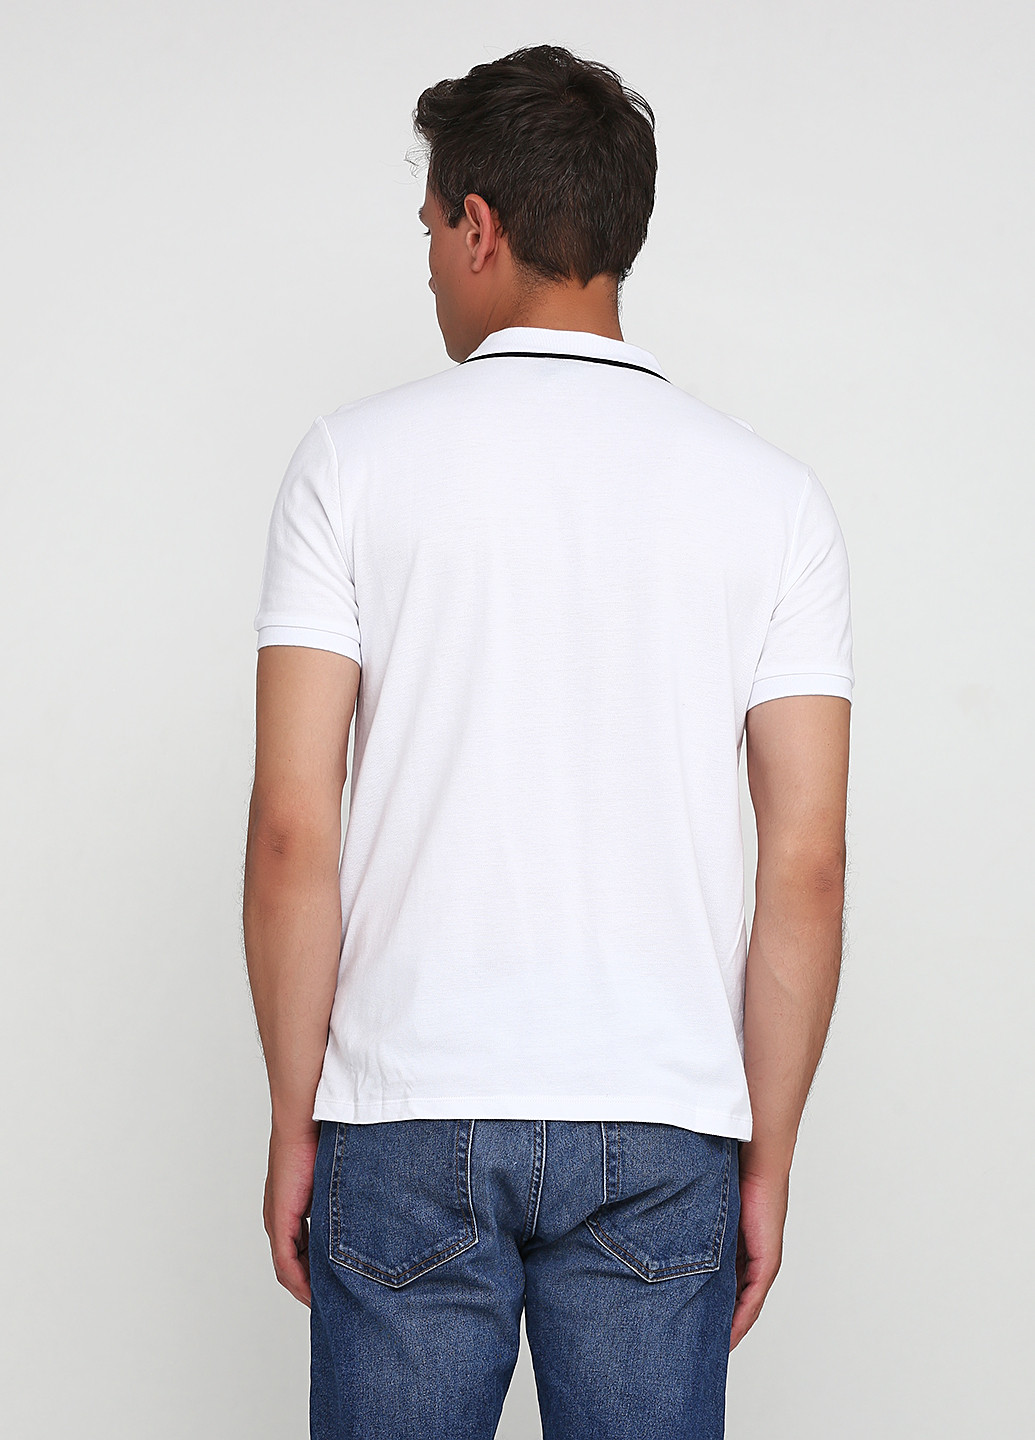 Белая футболка-поло для мужчин H&M с логотипом